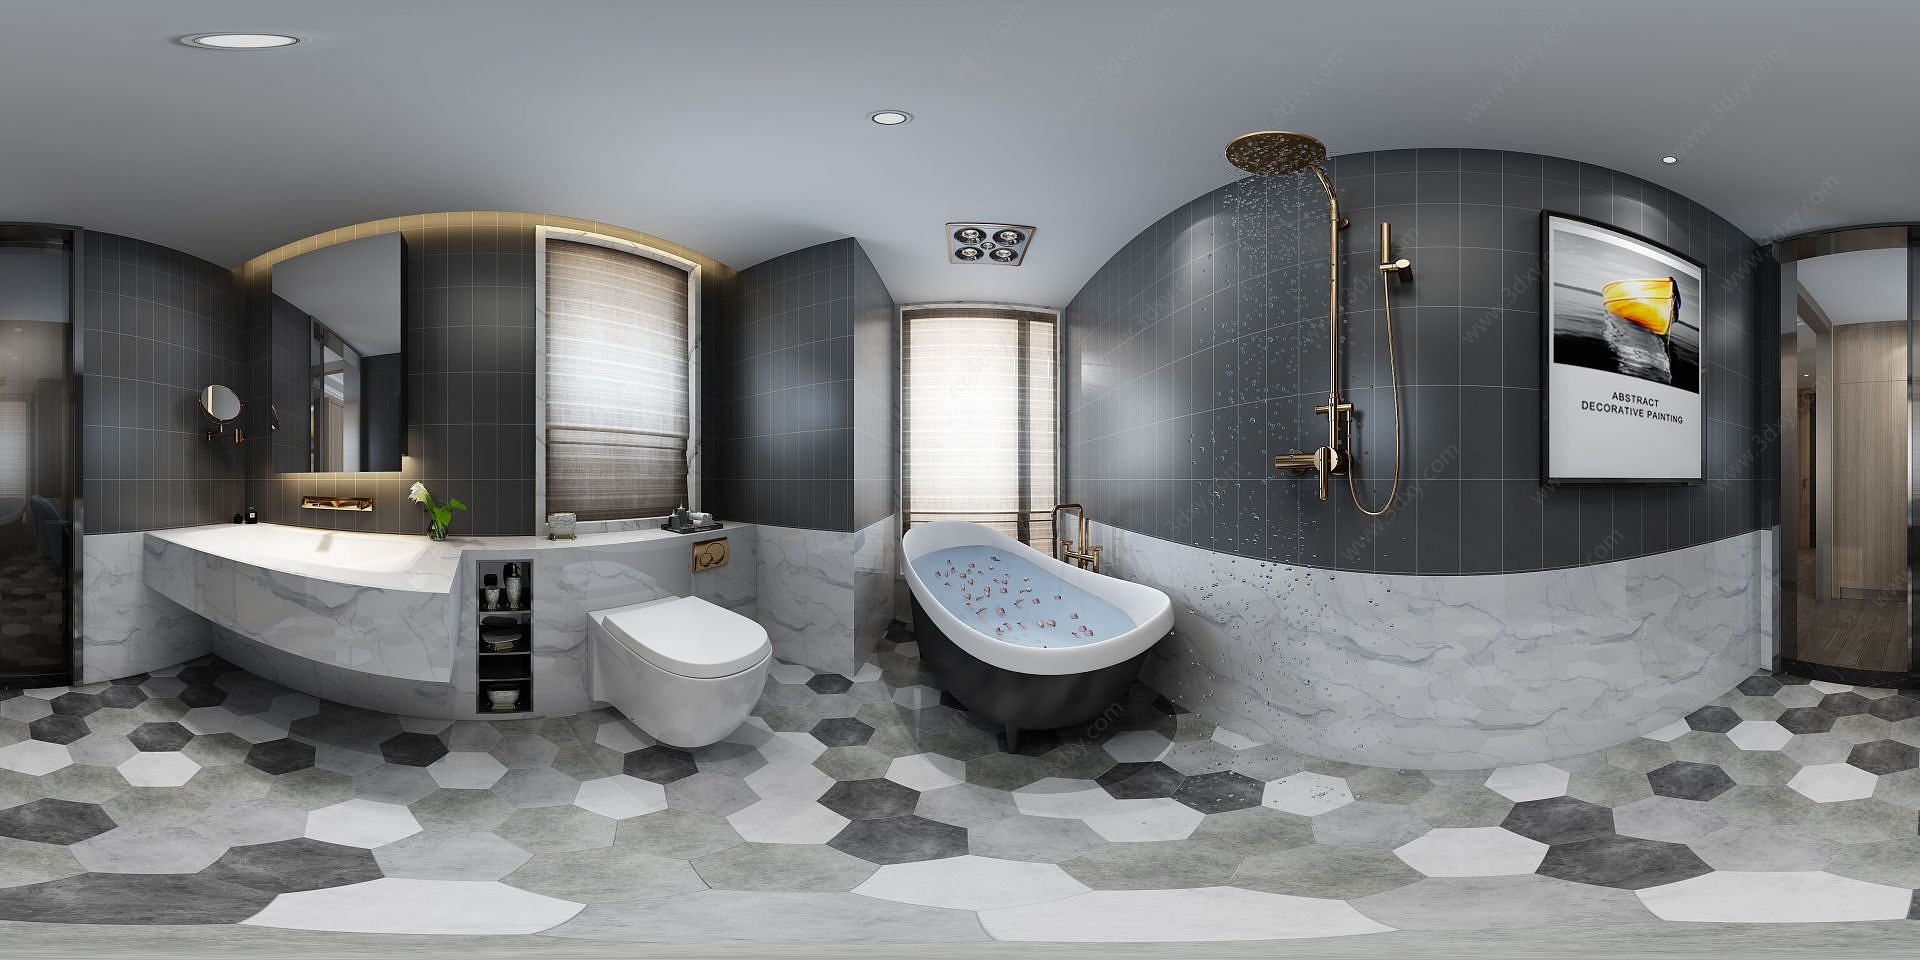 全景现代卫浴间3D模型